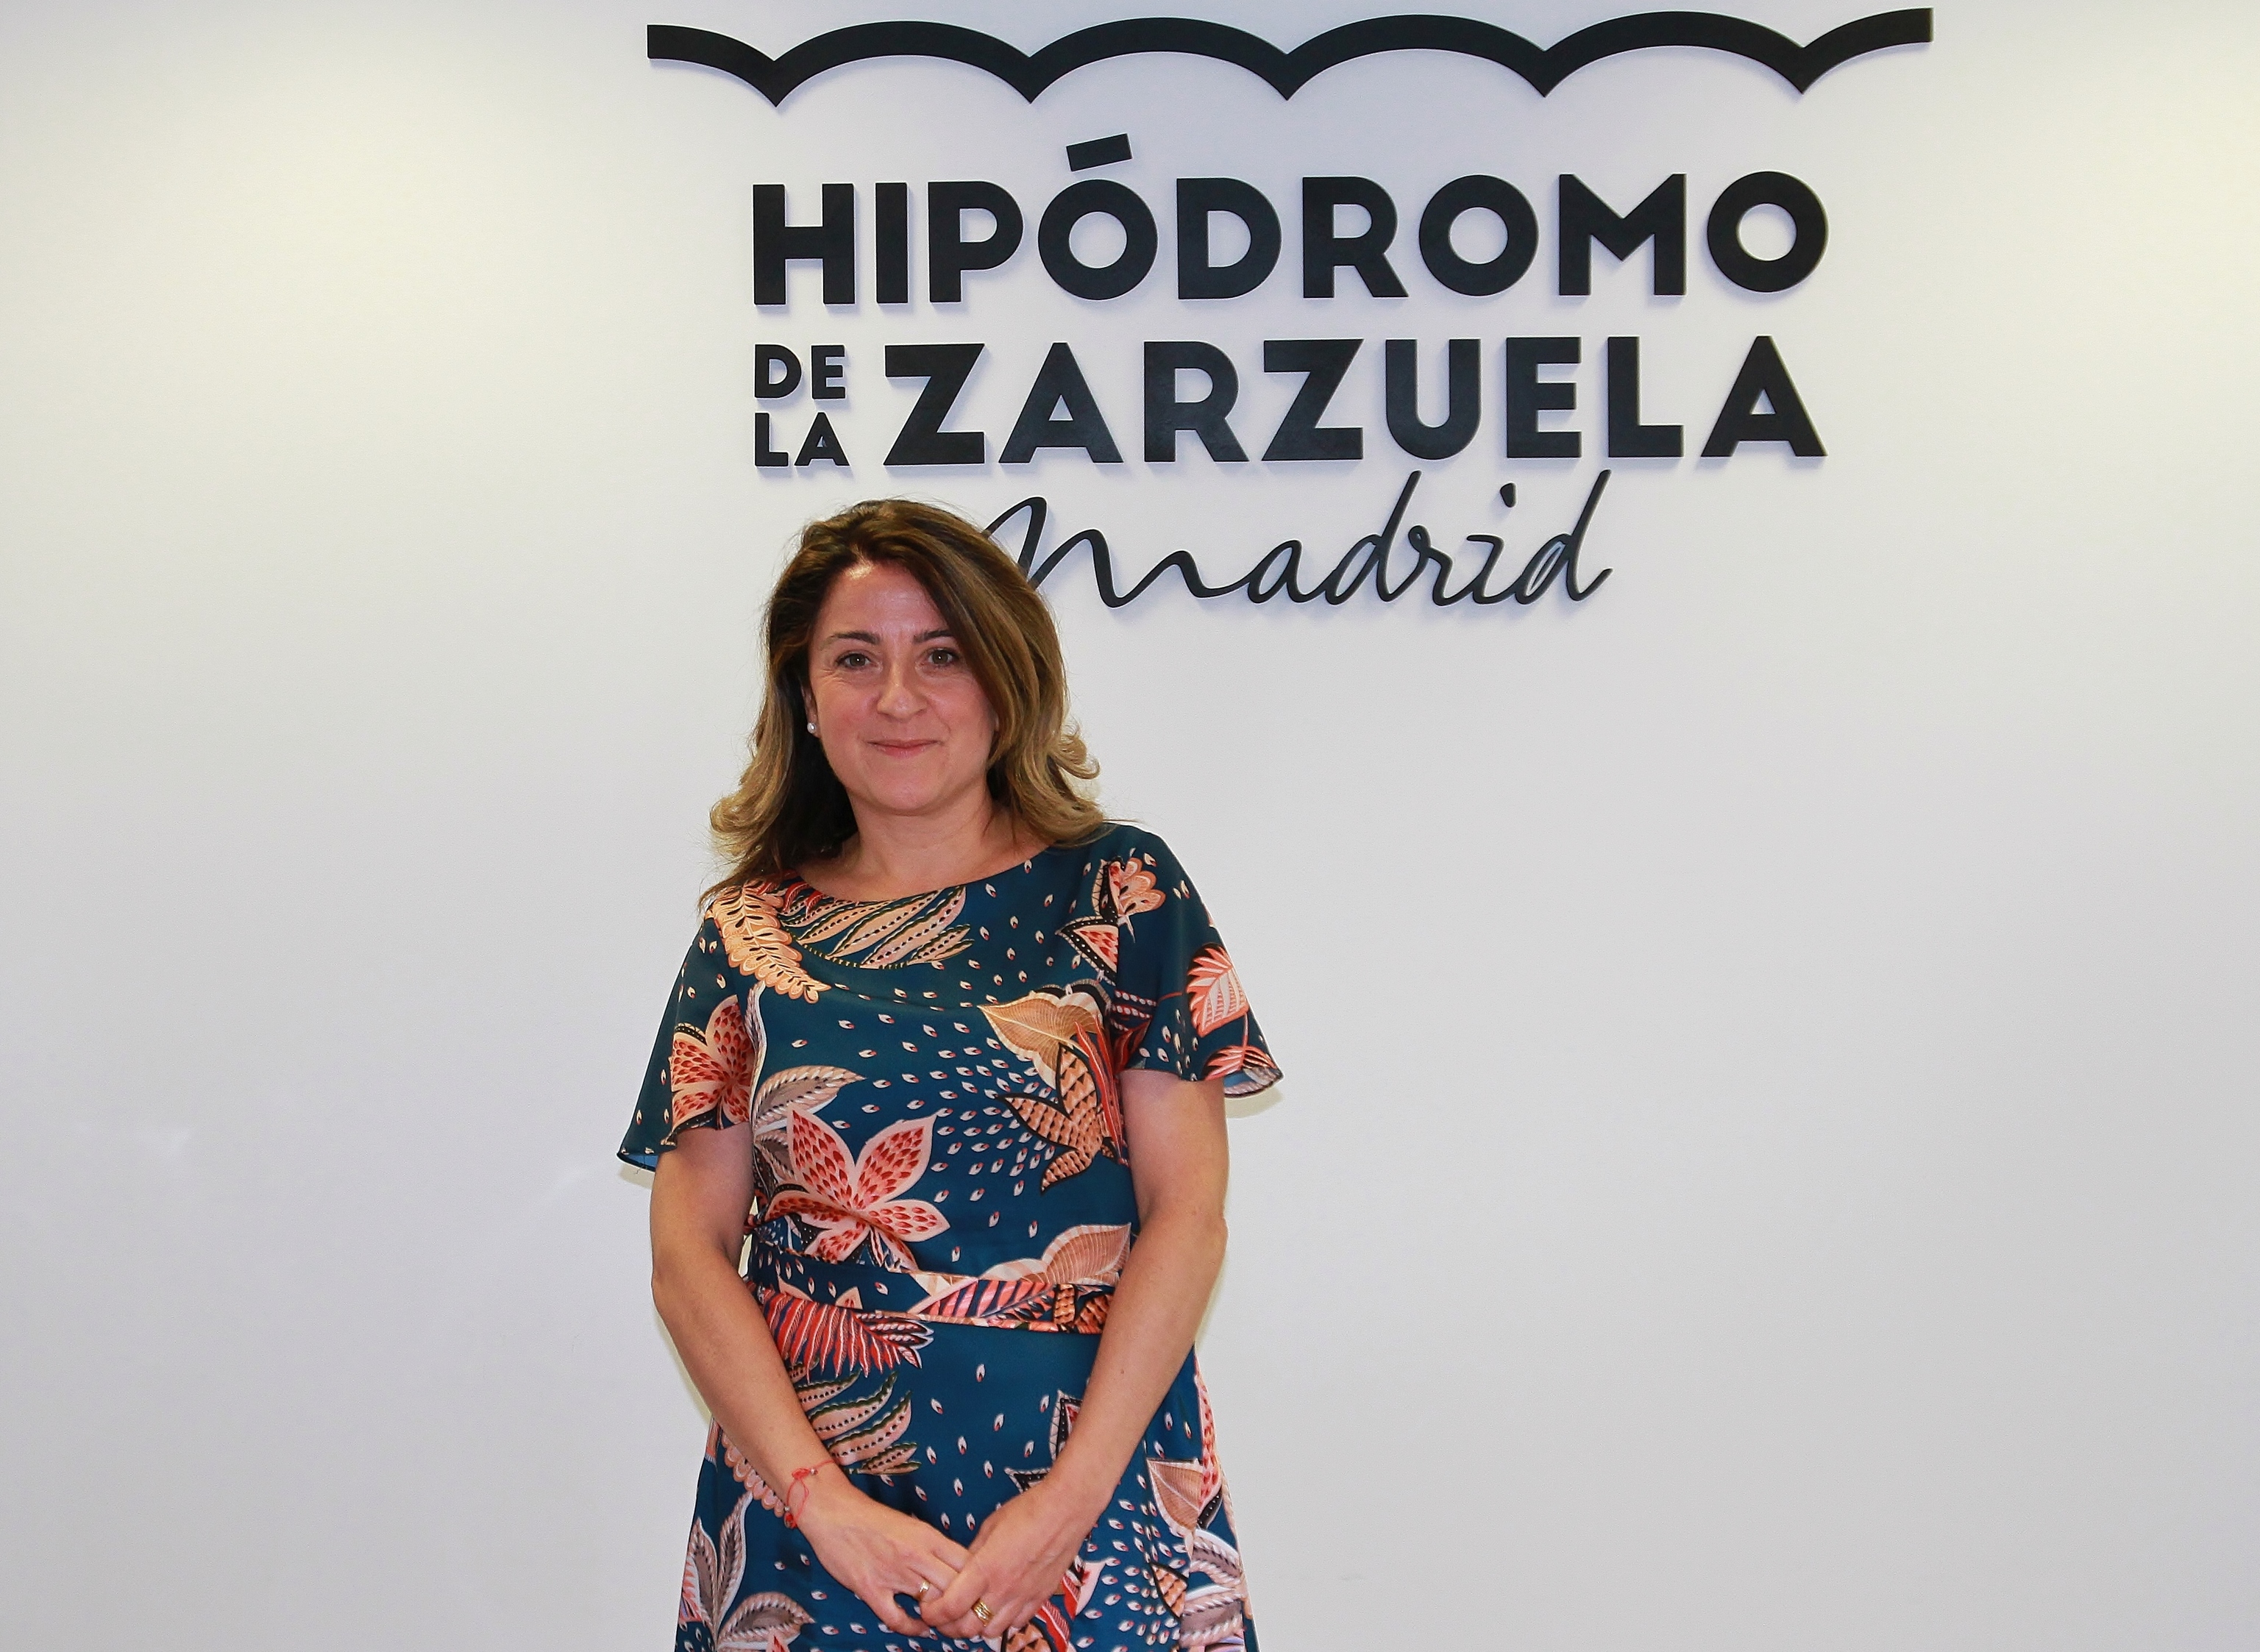 La nueva presidenta del Hipdromo de la Zarzuela, Maritcha Ruiz